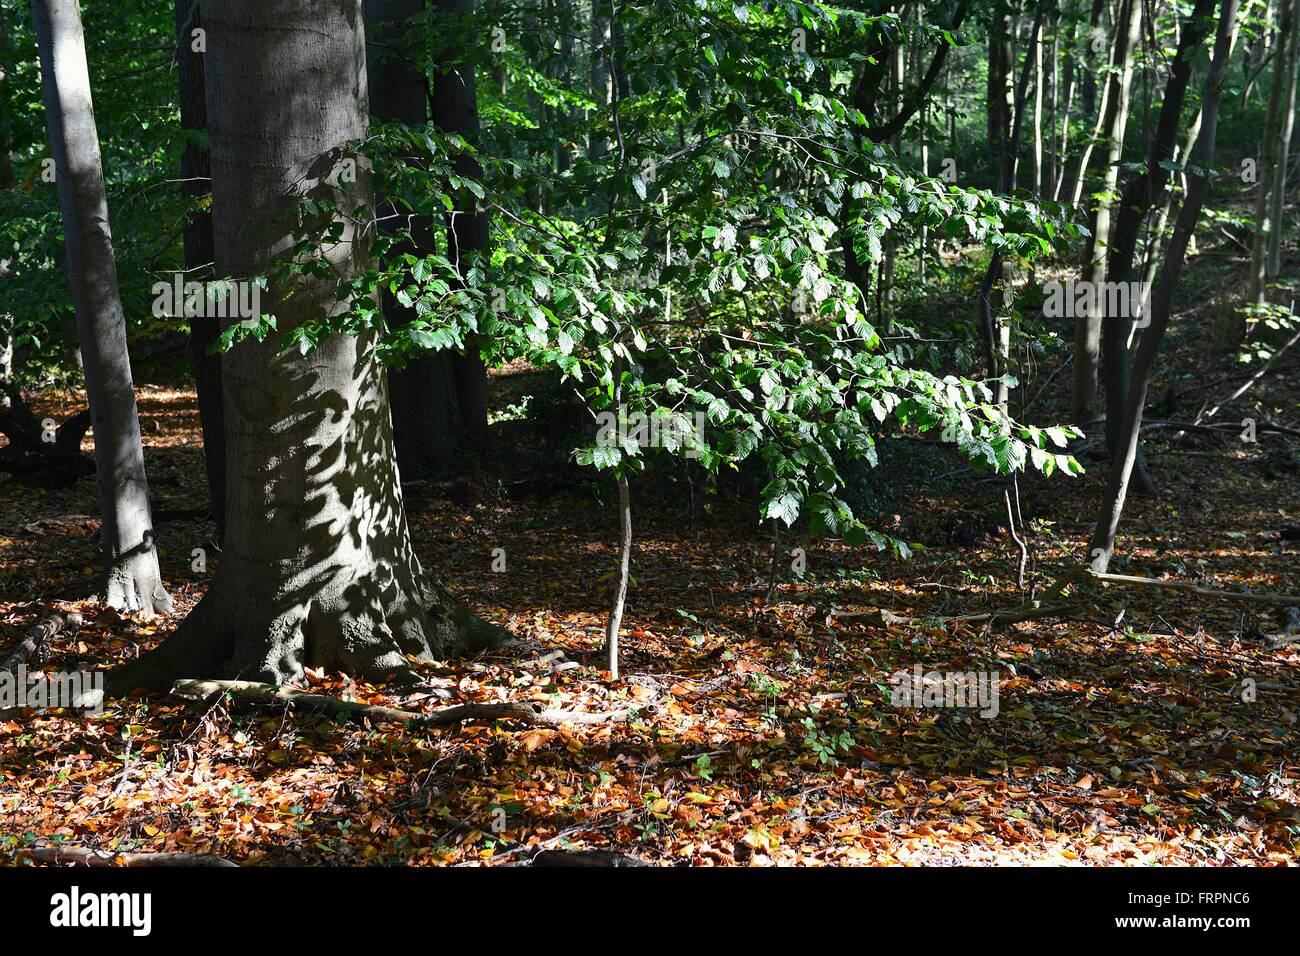 La gamma della montagna Deister - foglie gettando ombre su il sole ha illuminato il tronco di un faggio nella foresta, 11 Ottobre 2015 Foto Stock